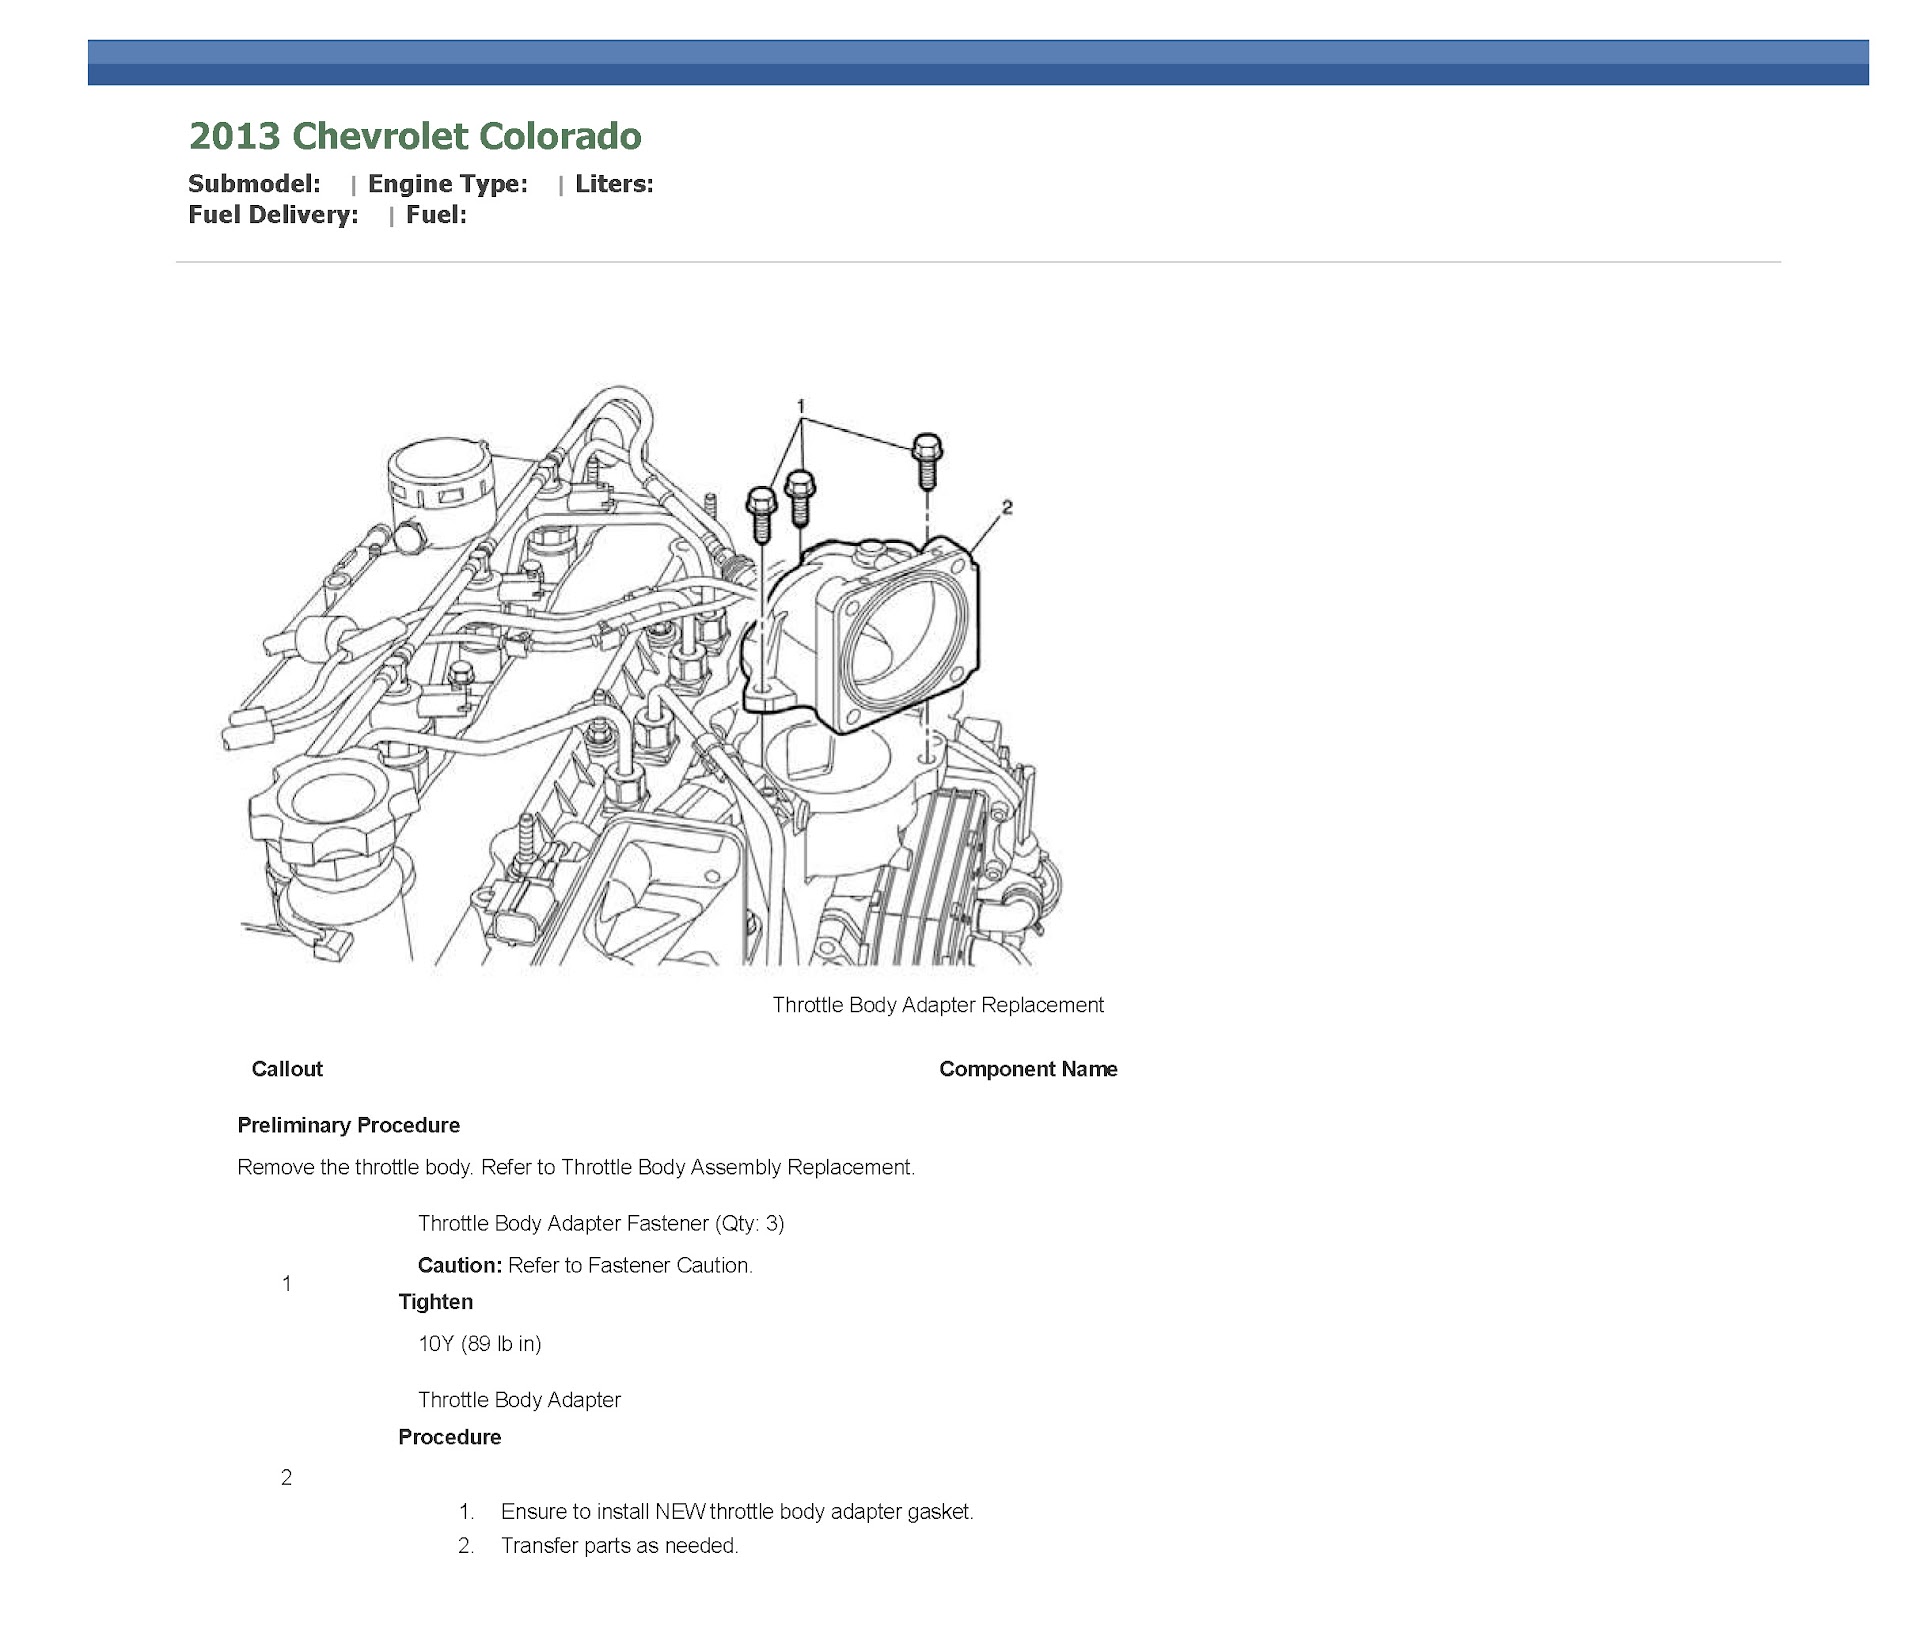 2012-2017 Holden Chevrolet Colorado Service Repair Manual